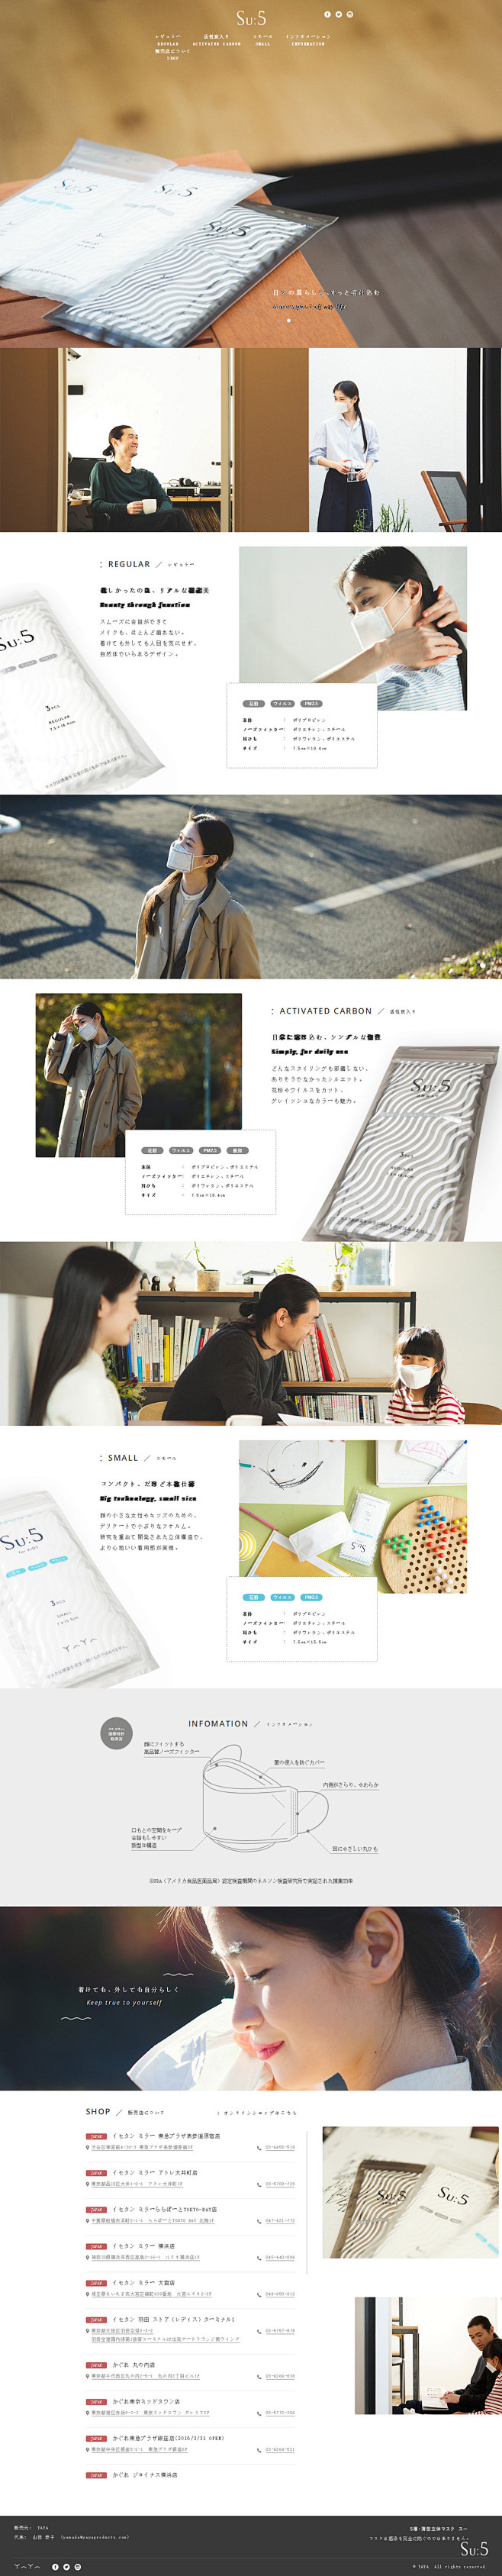 日式网页欣赏---文艺清新设计者的福音